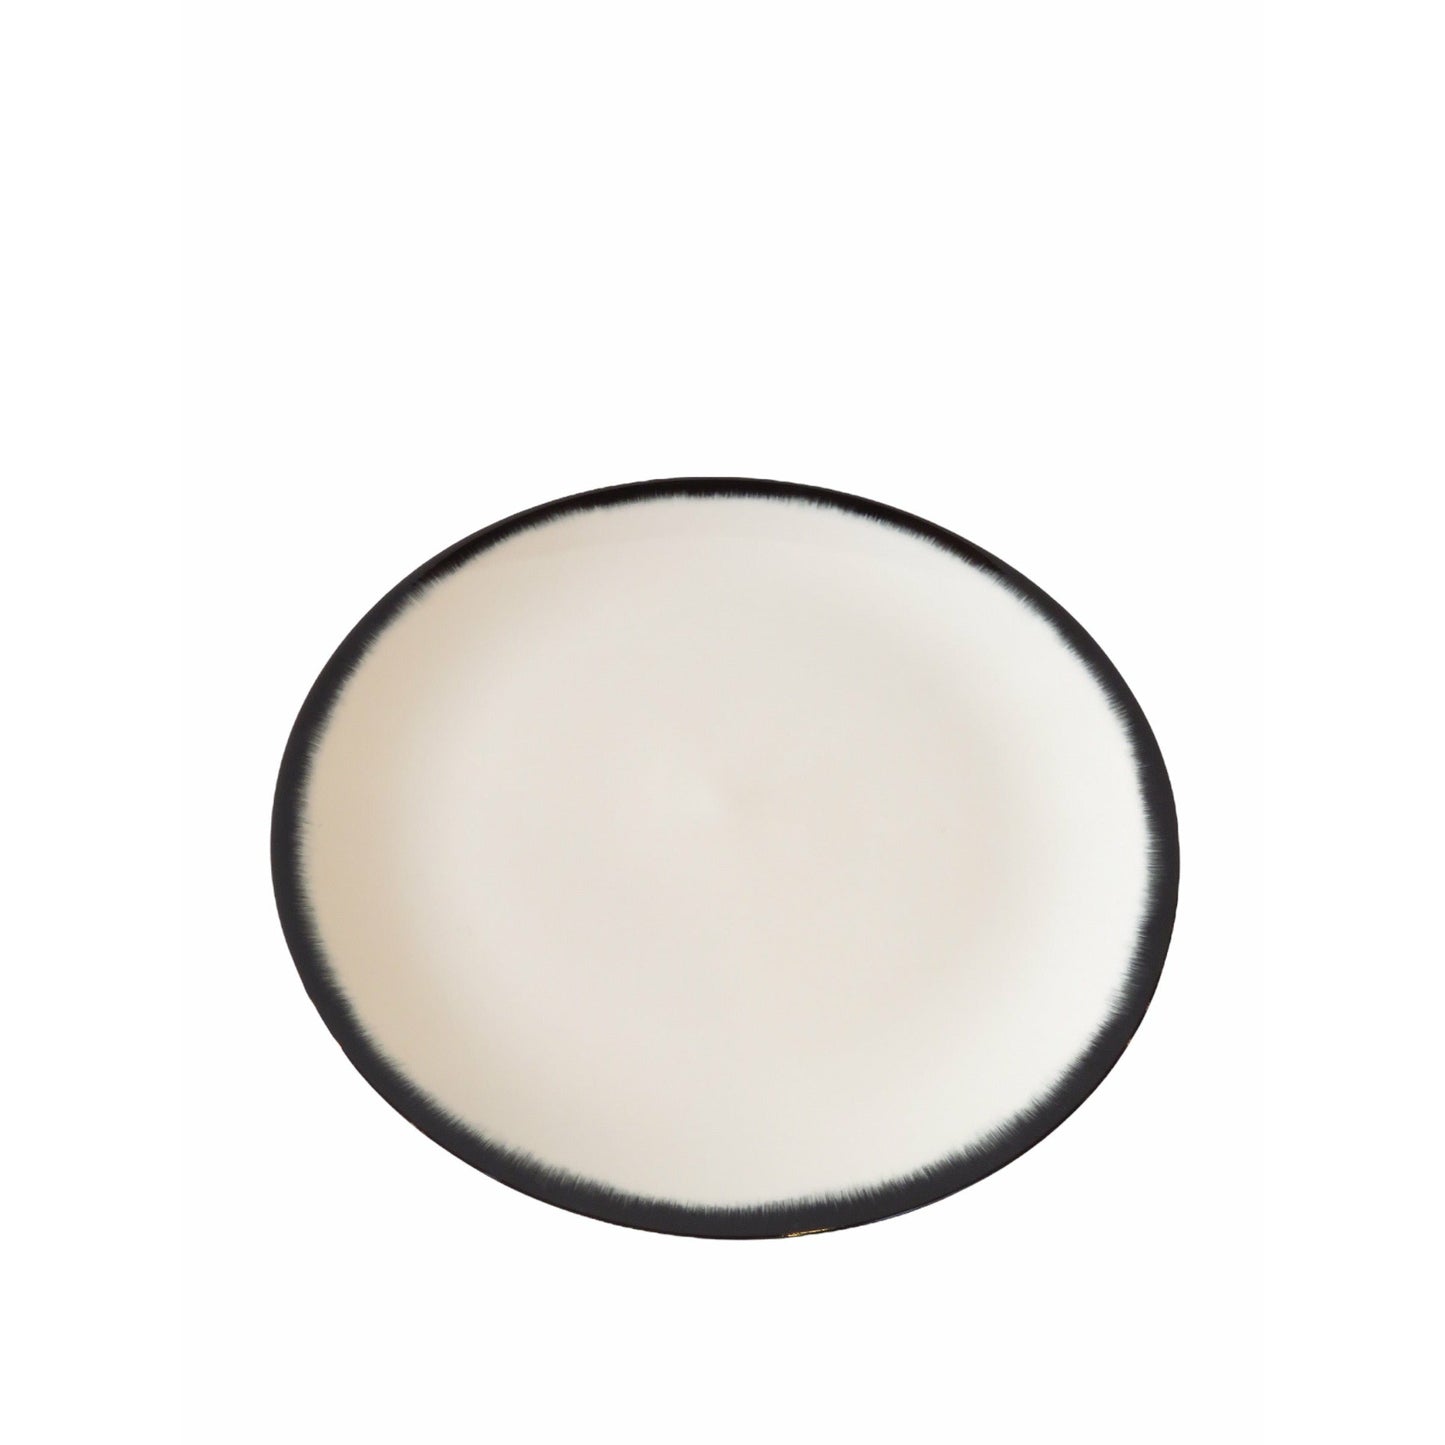 Ann Demeulemeester Home Plate 17.5 centimeter / Off-white & black / Porcelain Ann Demeulemeester for Serax 17.5 cm plates (set of two)